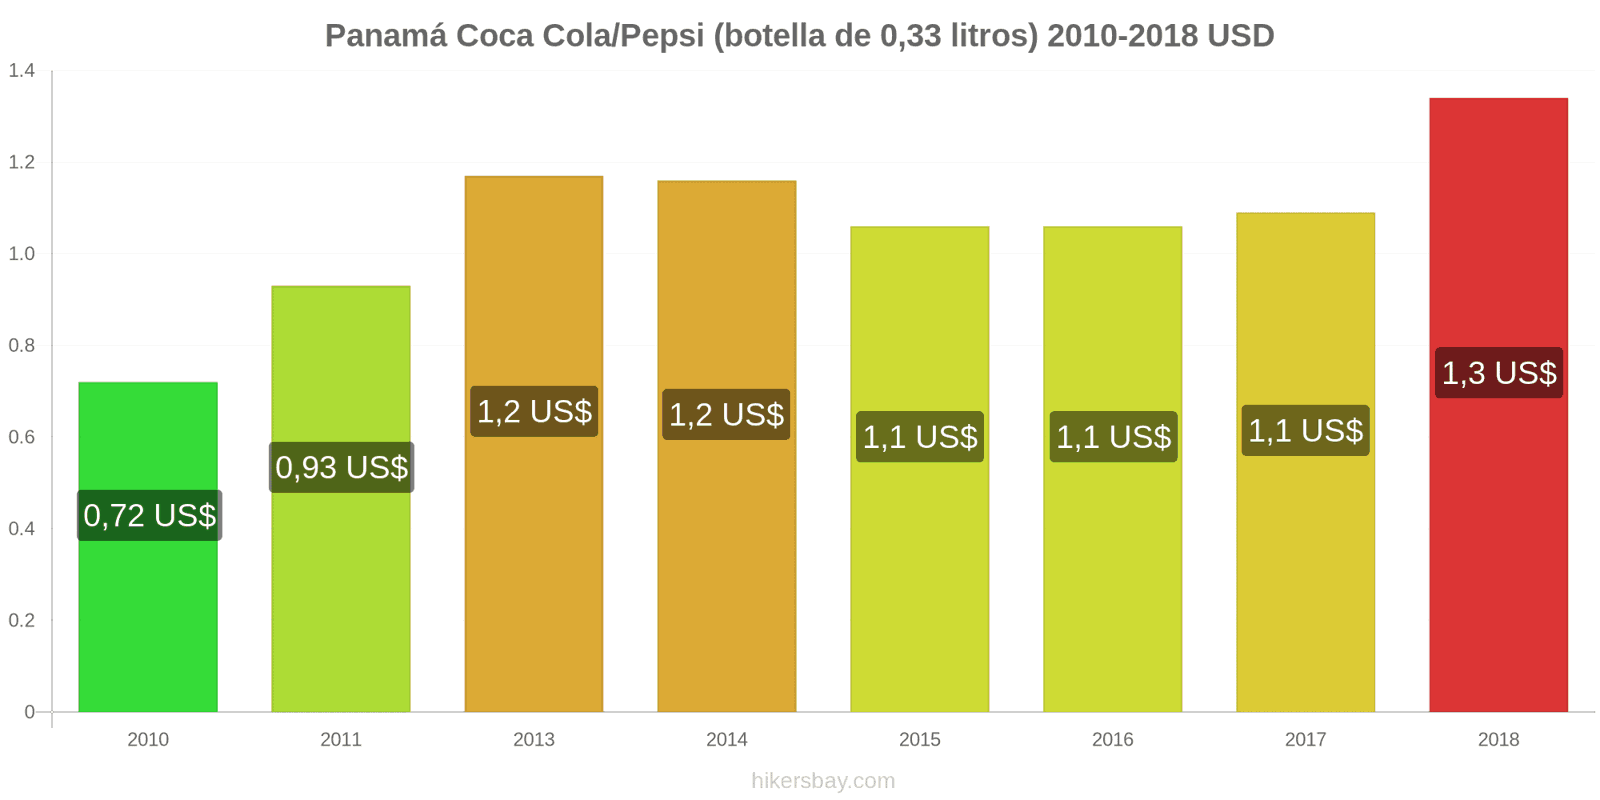 Panamá cambios de precios Coca-Cola/Pepsi (botella de 0.33 litros) hikersbay.com